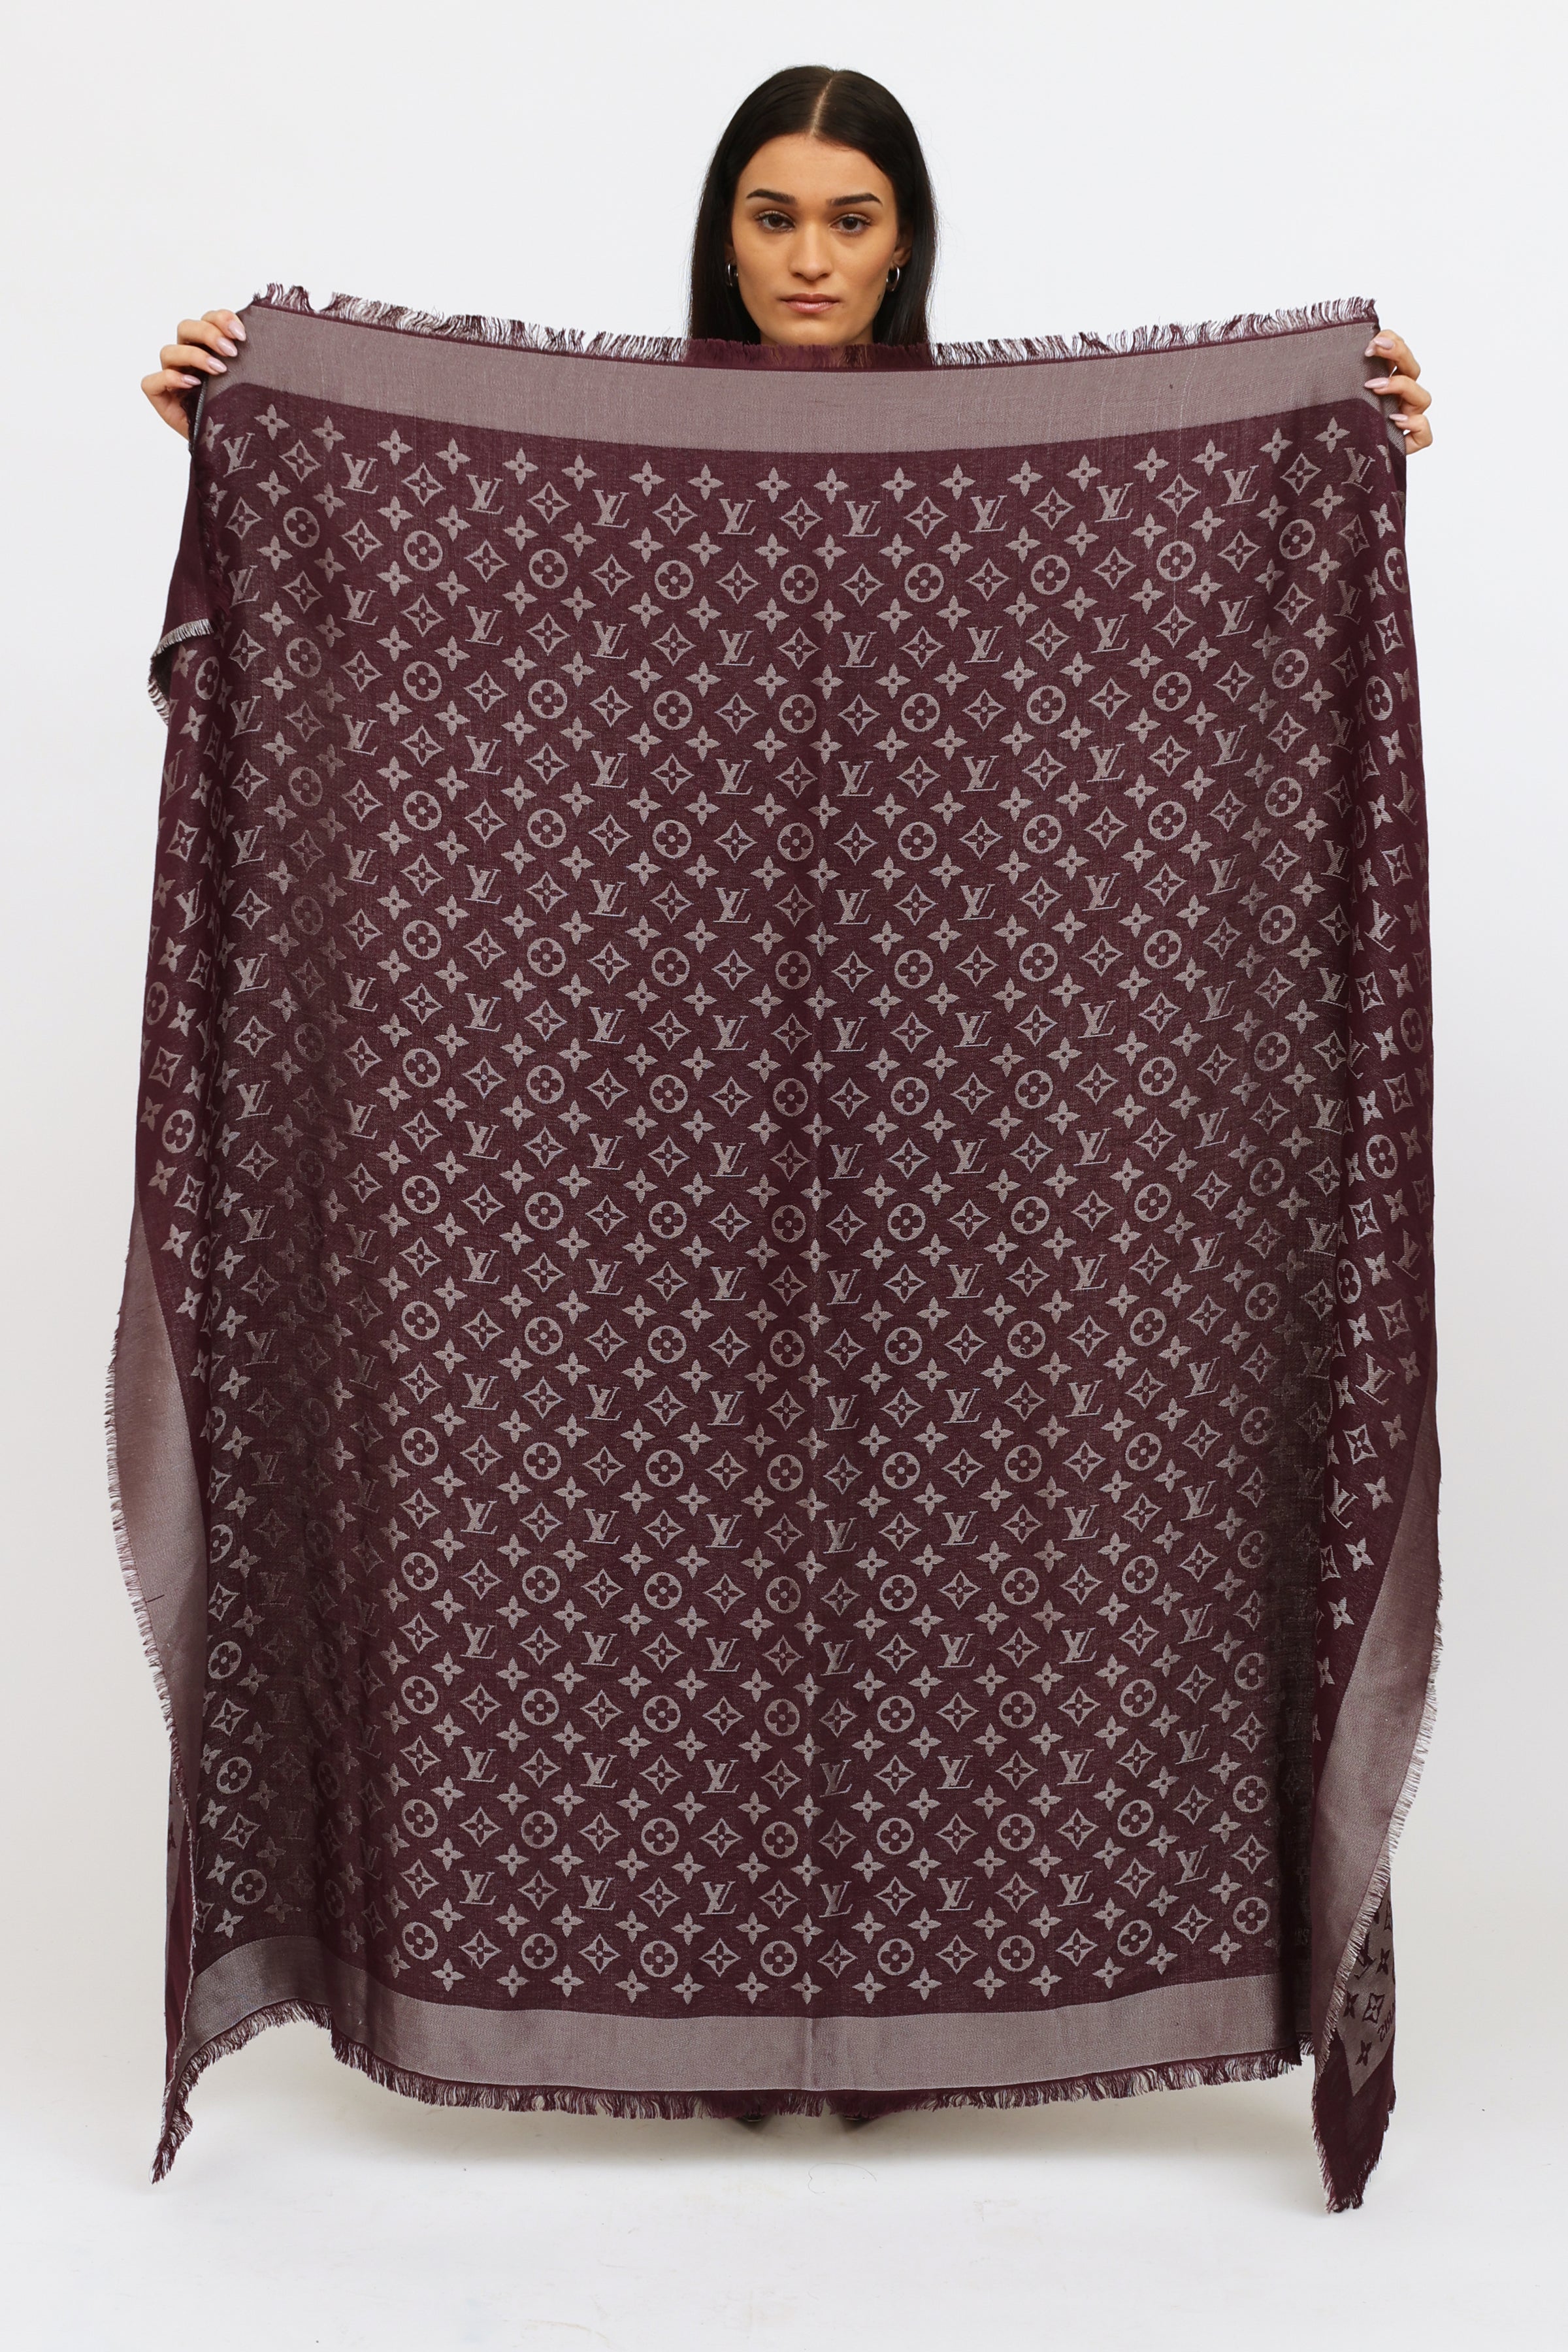 Louis Vuitton Pink/Purple Monogram Silk/Wool Shine Shawl Scarf